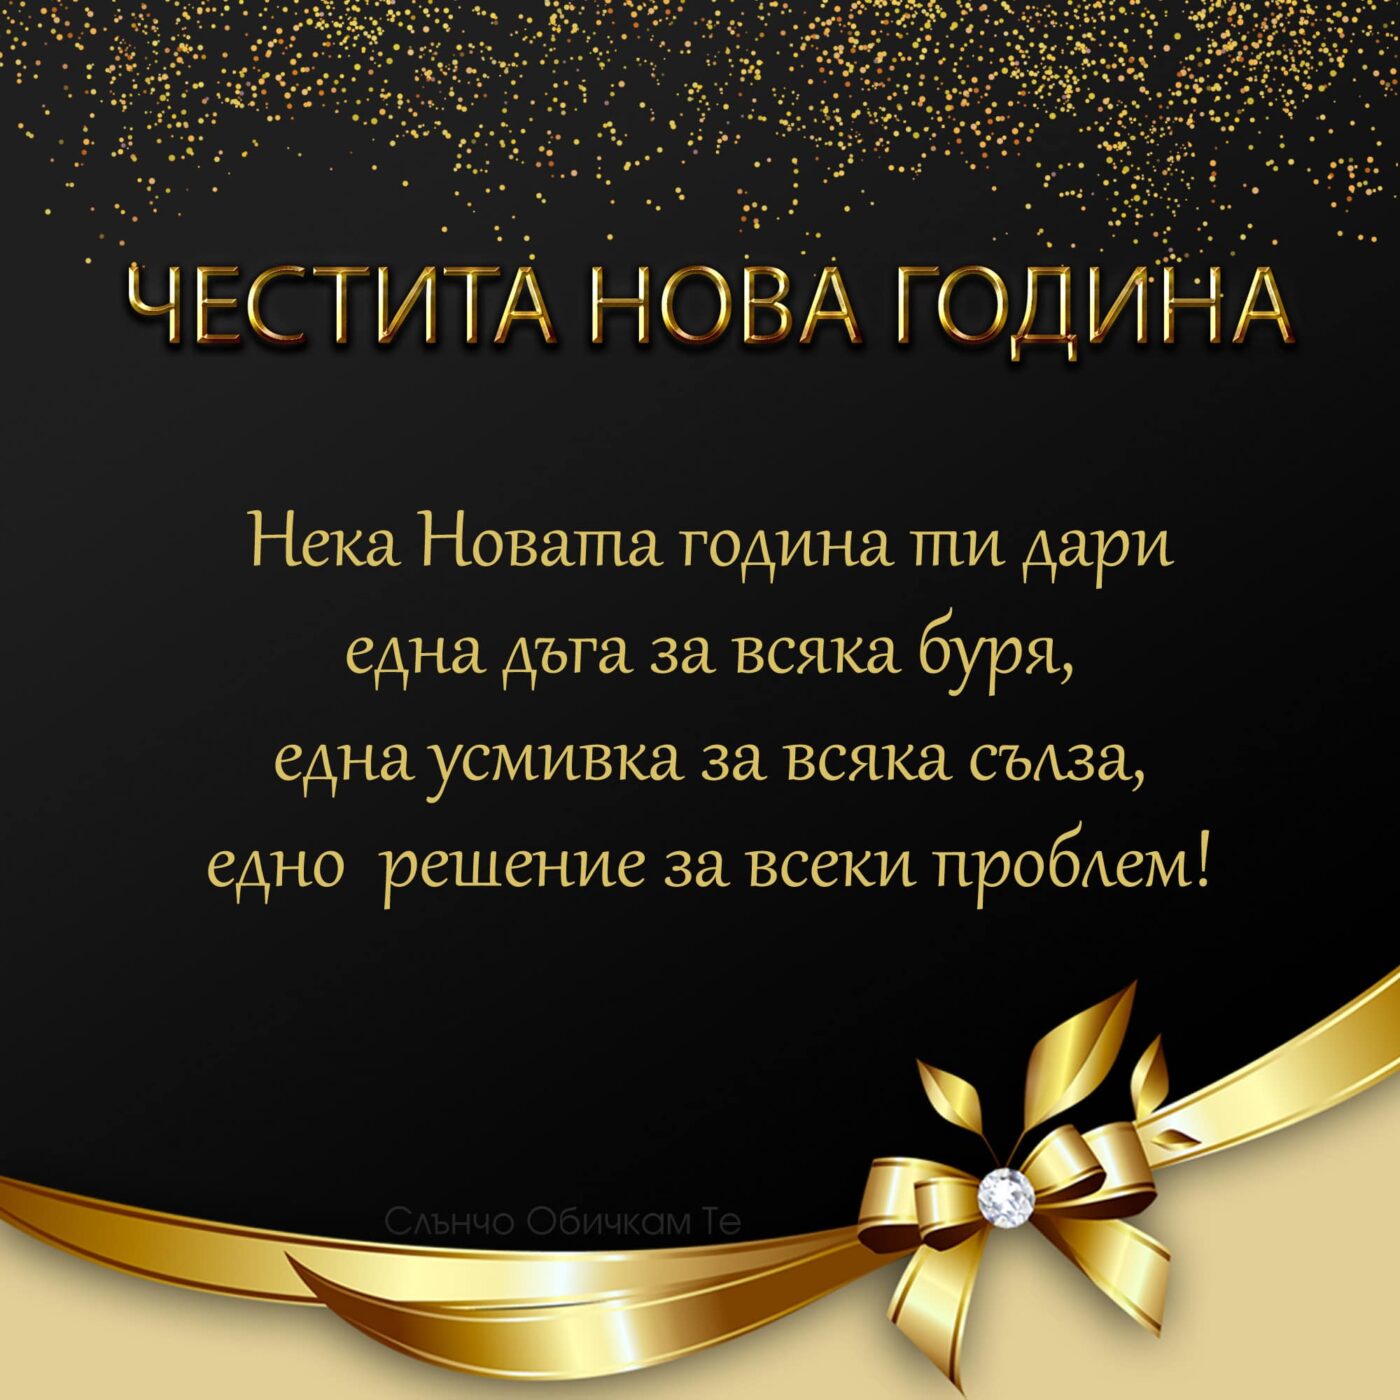 Честита Нова година с пожелание - Картички за Нова година 2021, златни орнаменти, златен надпис